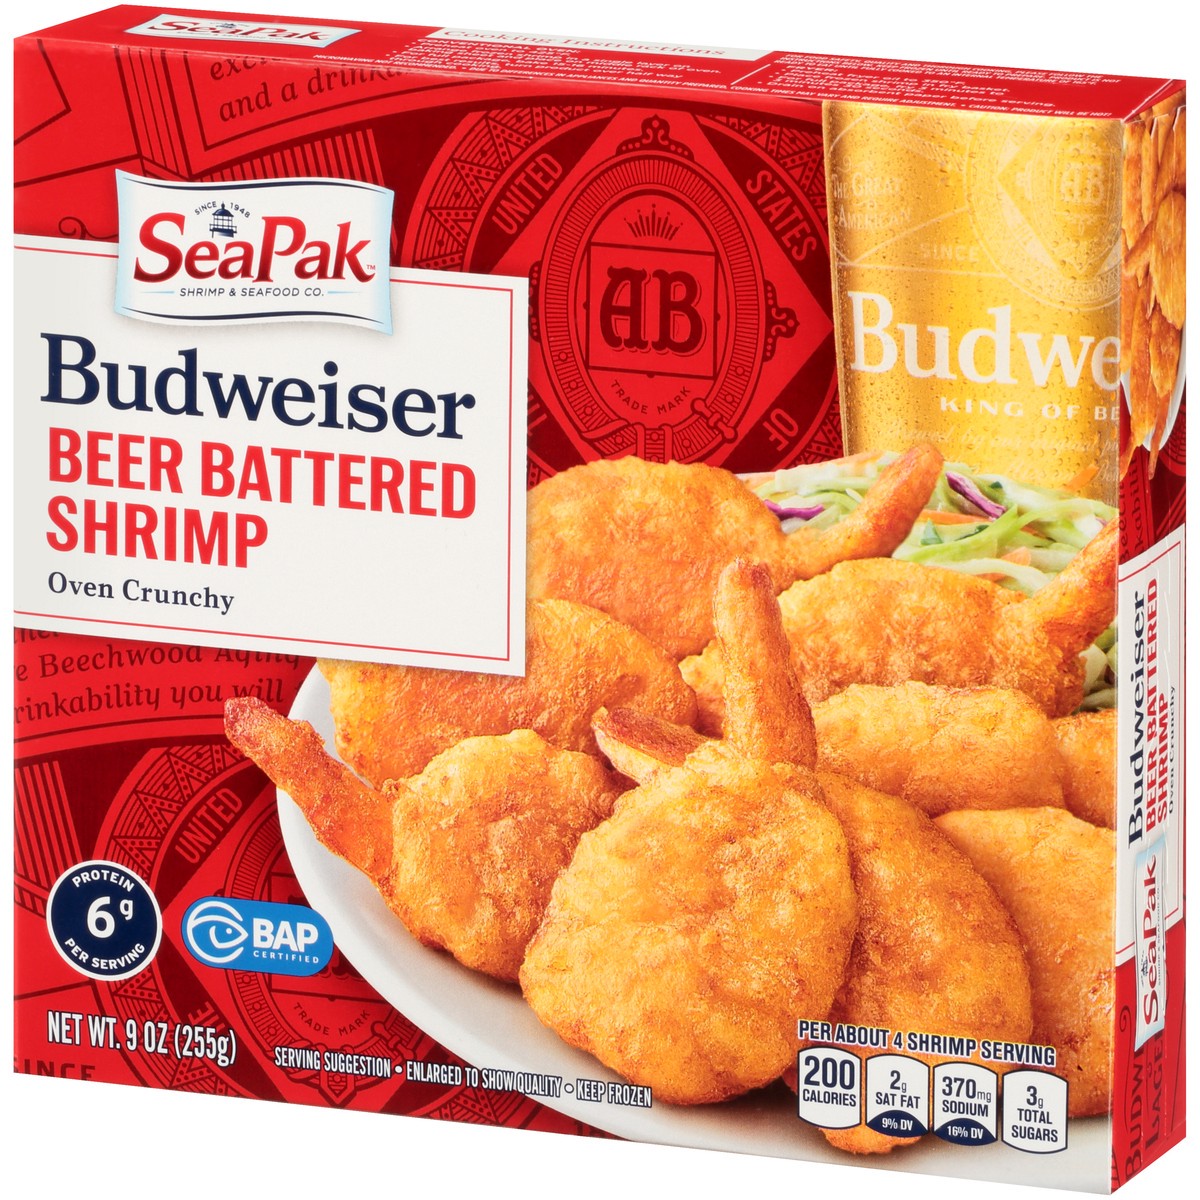 slide 4 of 14, SeaPak Shrimp & Seafood Co. Budweiser Oven Crunchy Beer Battered Shrimp 9 oz. Box, 9 oz